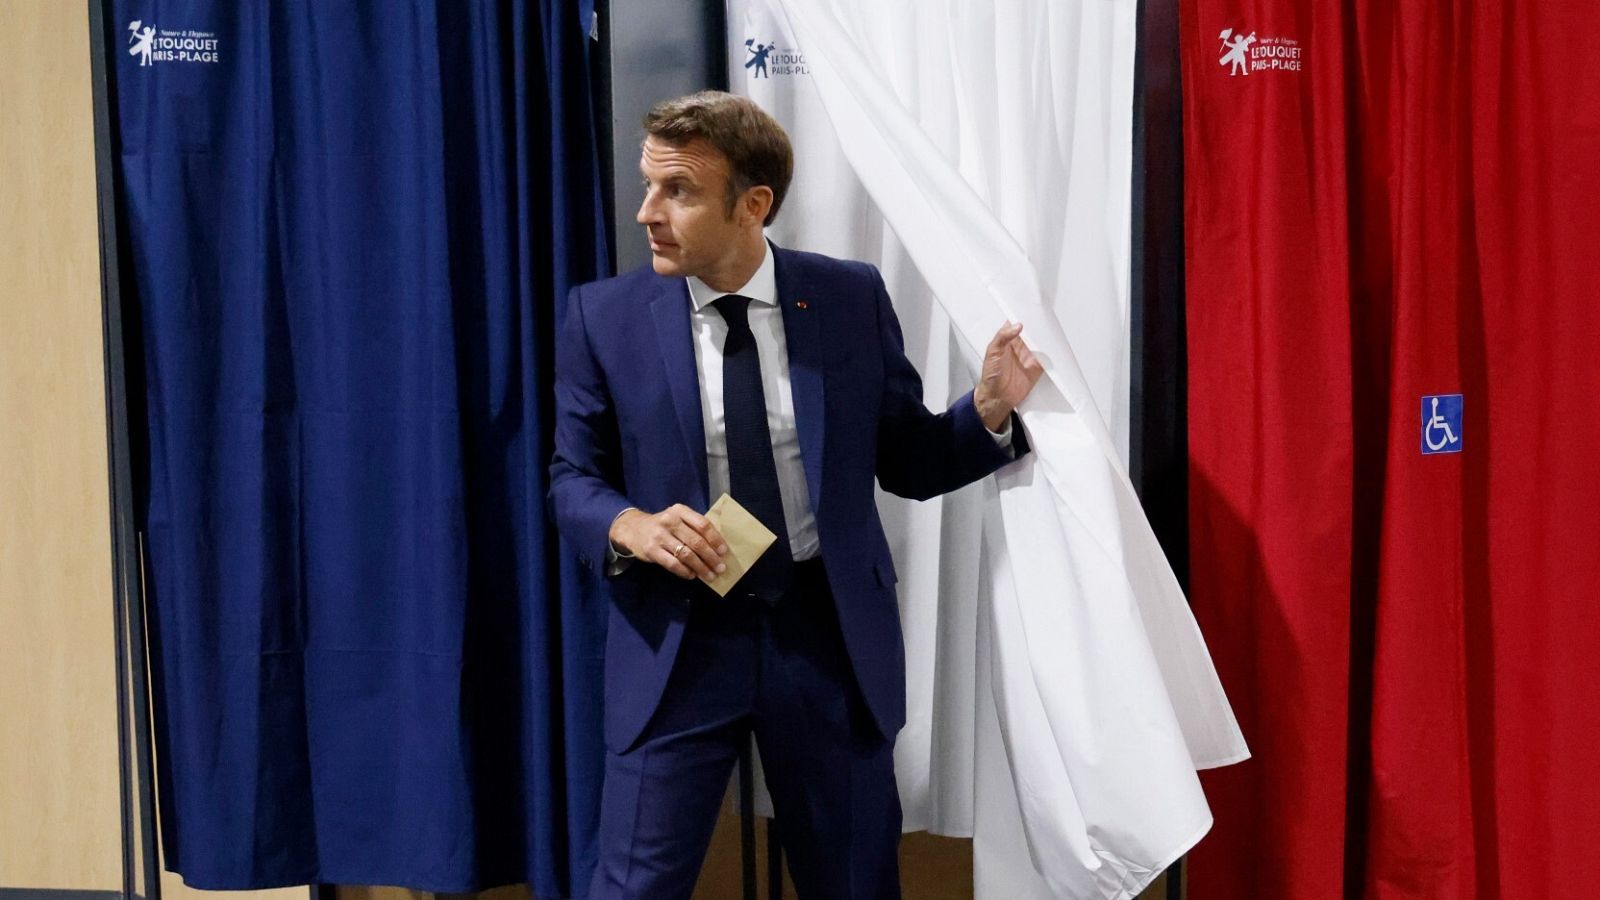 Mélenchon gana terreno a Macron en unas legislativas marcadas por la abstención